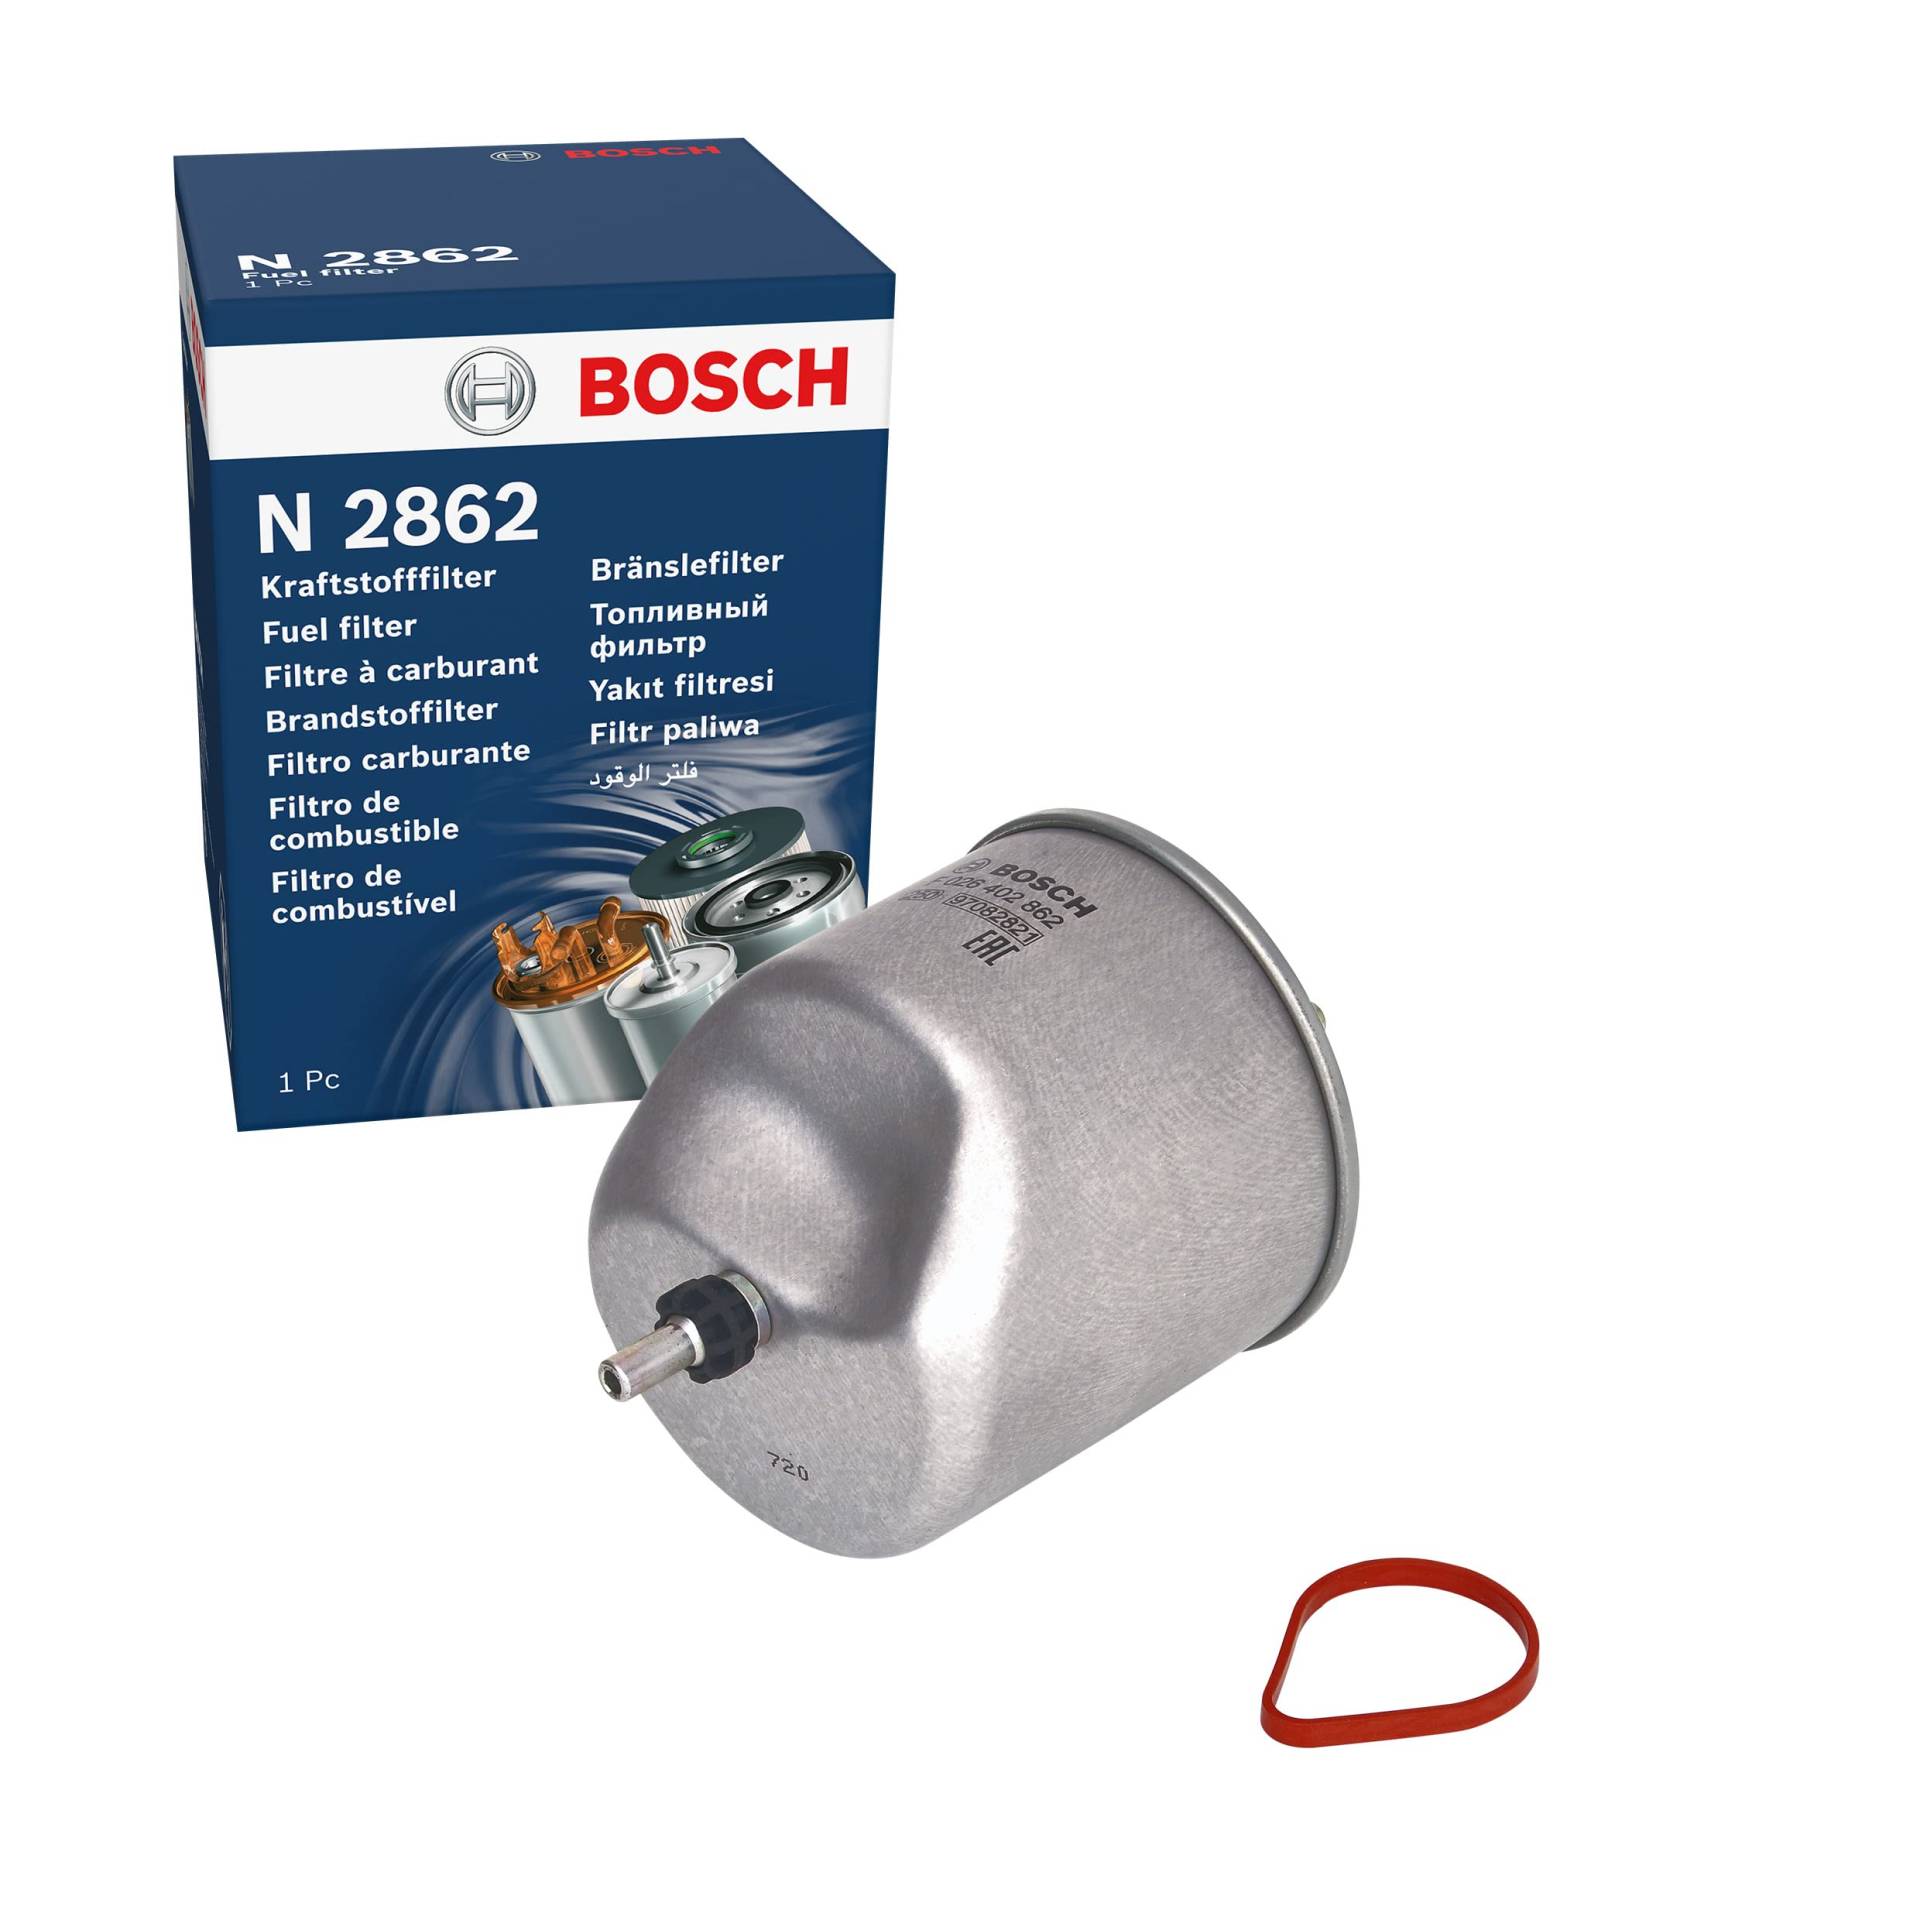 Bosch N2862 - Dieselfilter Auto von Bosch Automotive